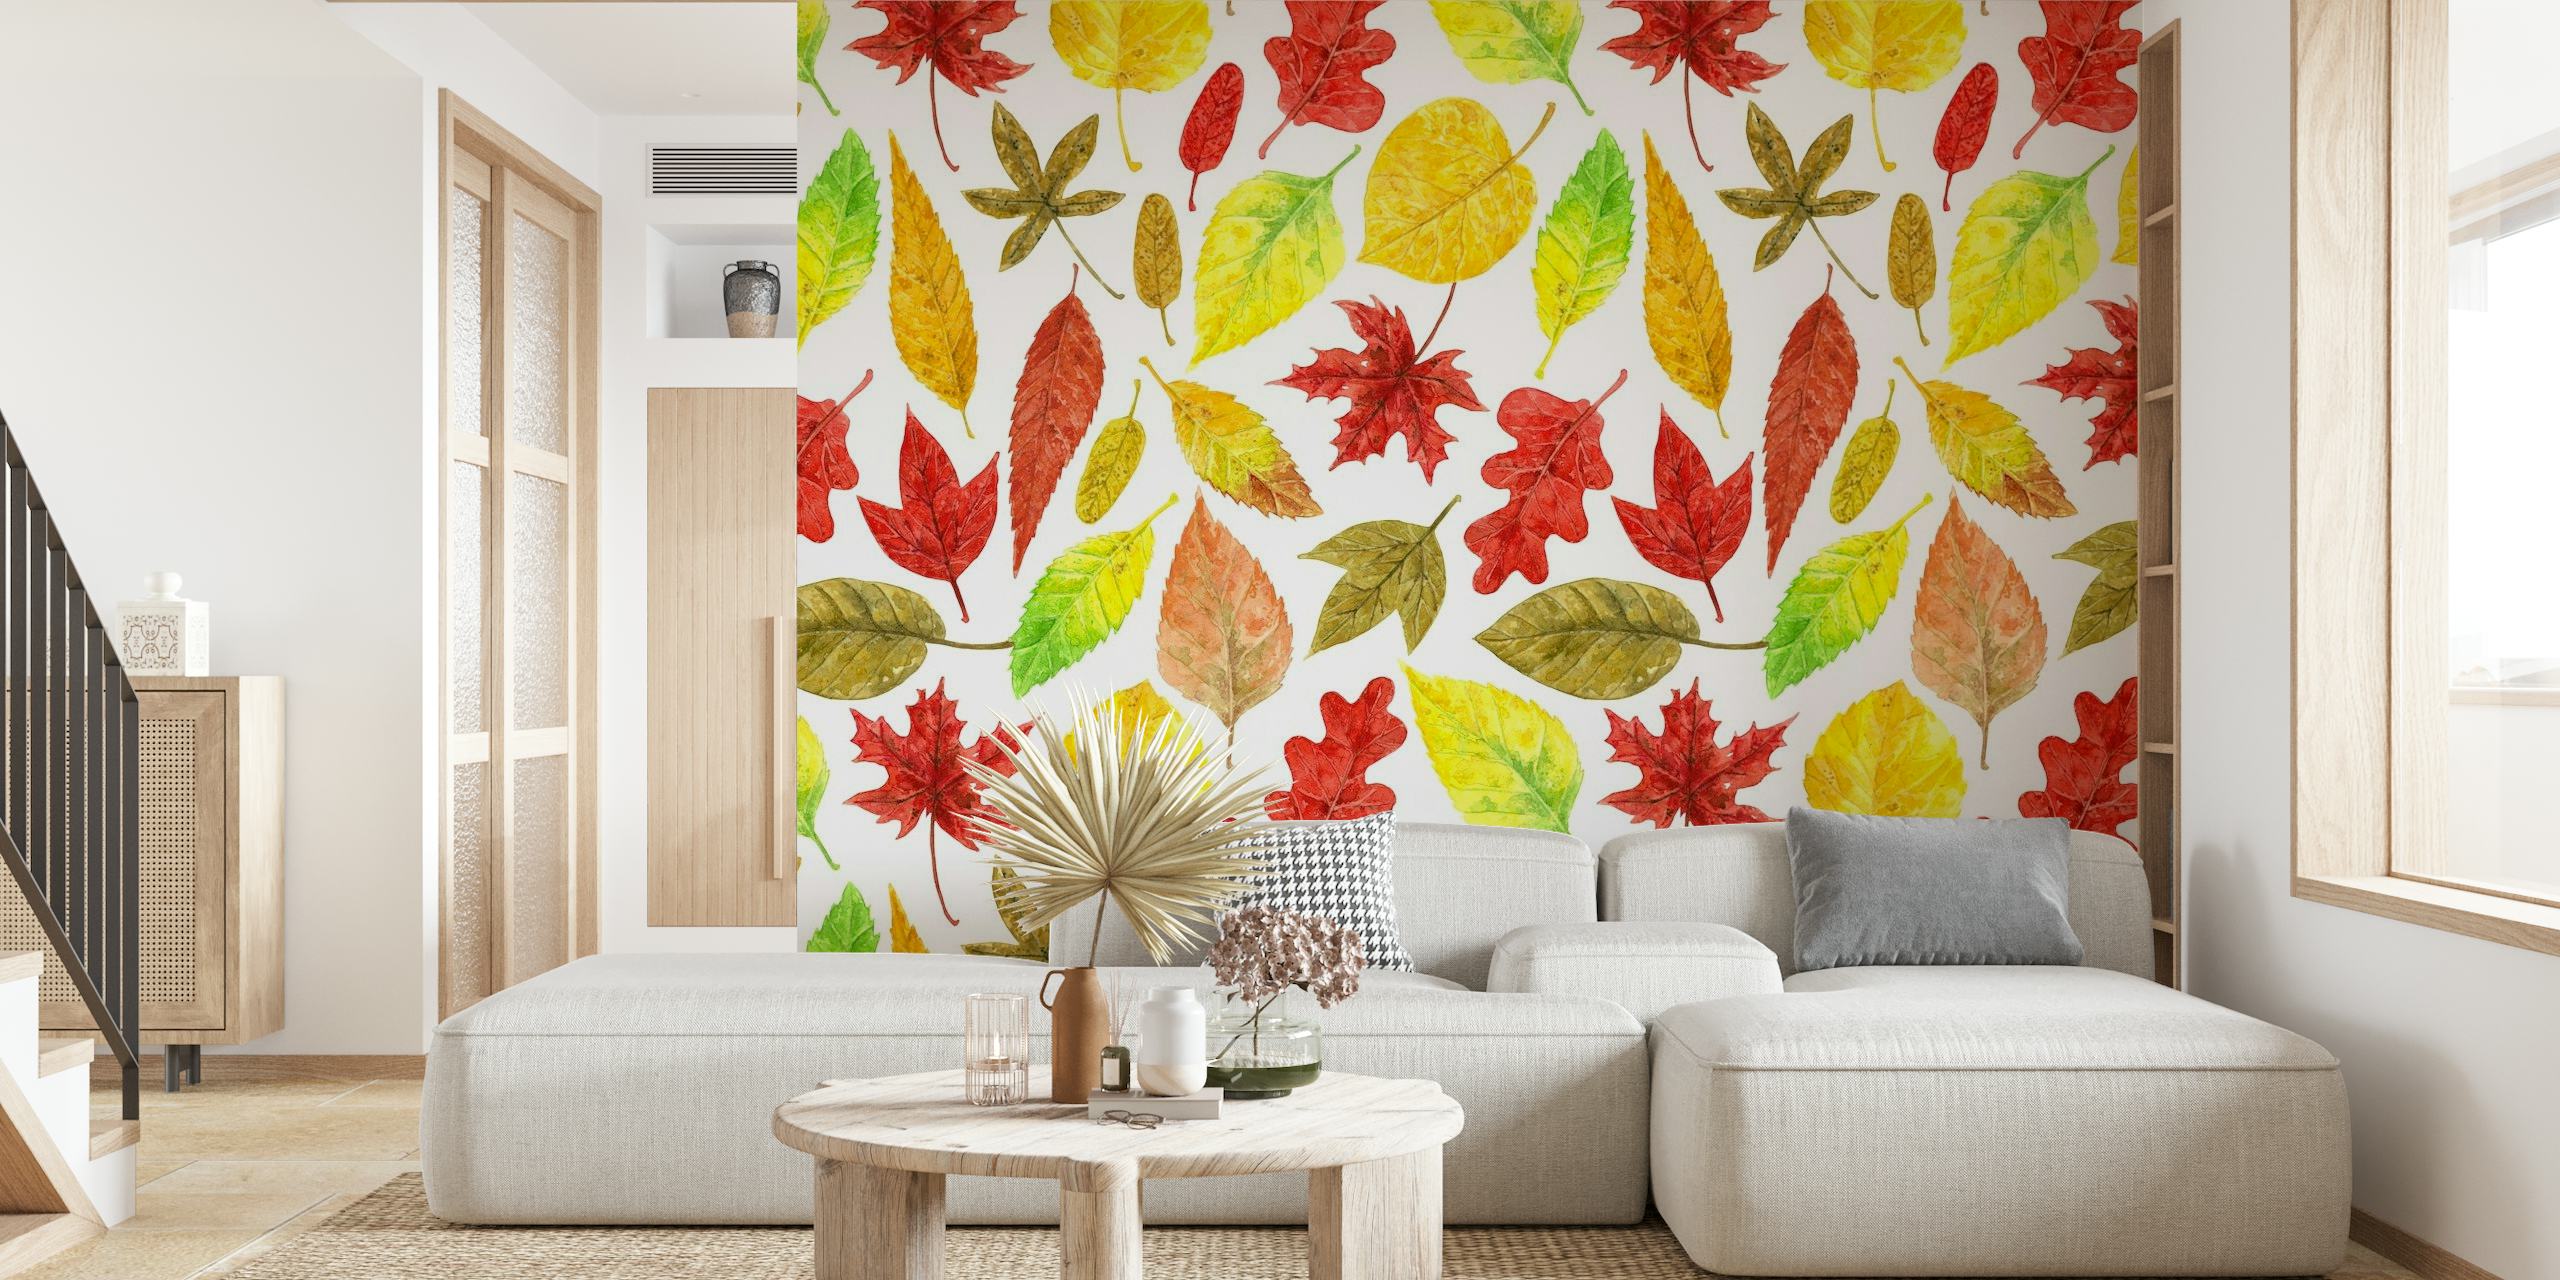 Aquarel herfstbladeren in rode, oranje en gele tinten op een witte achtergrondmuurschildering